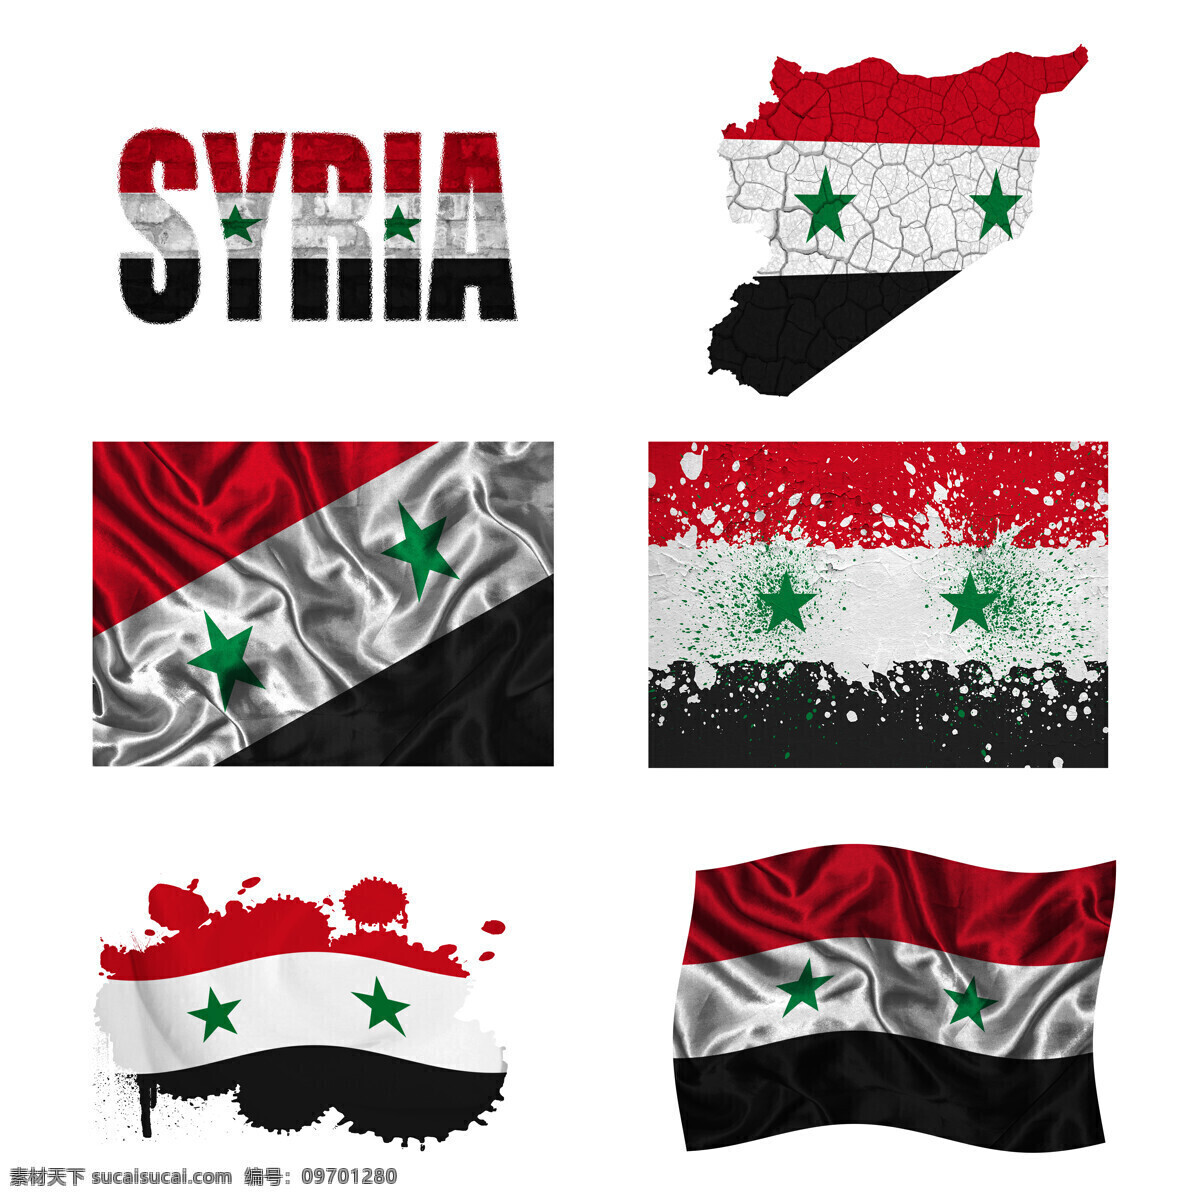 叙利亚 国旗 地图 叙利亚国旗 旗帜 国旗图案 其他类别 生活百科 白色